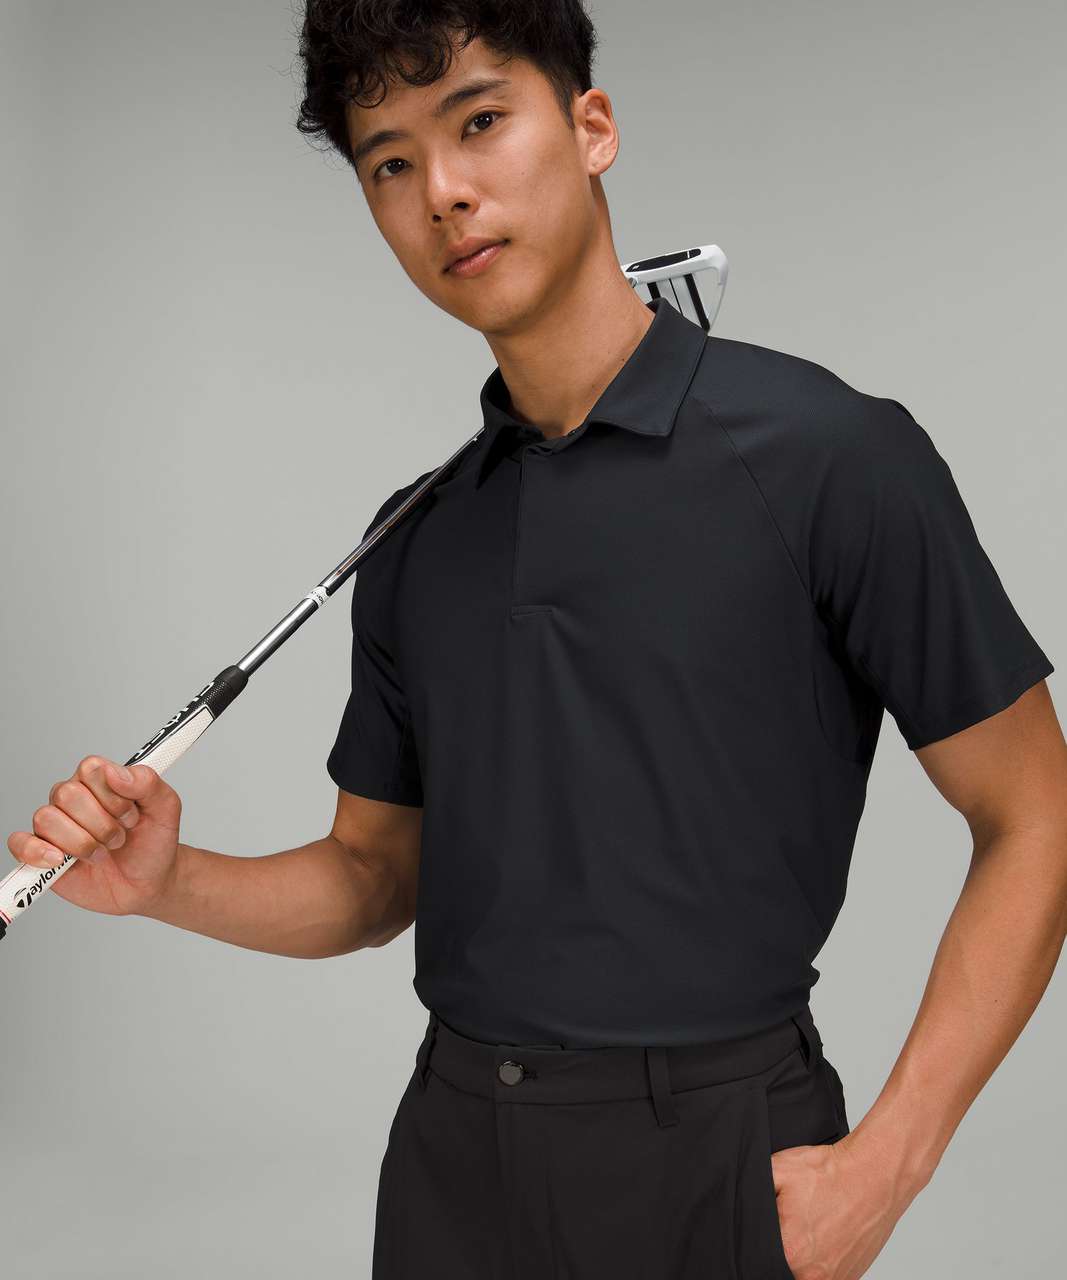 Lululemon Commission Golf Pant - Black